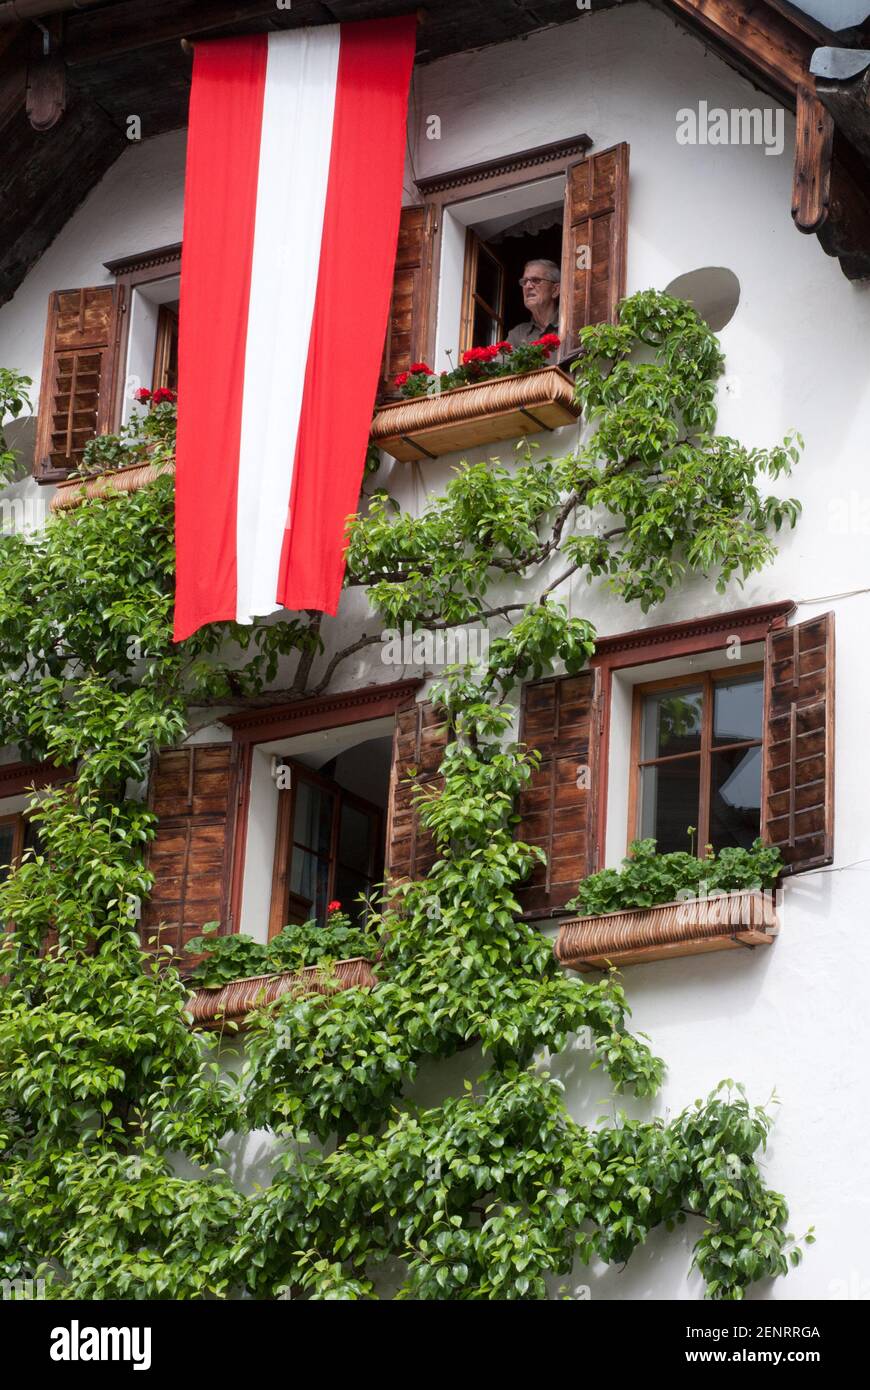 Vecchia casa sul mercato Hallstatt con persiane marroni, finestre aperte, alberi di spalliera e bandiera austriaca, Hallstatt, Austria Foto Stock